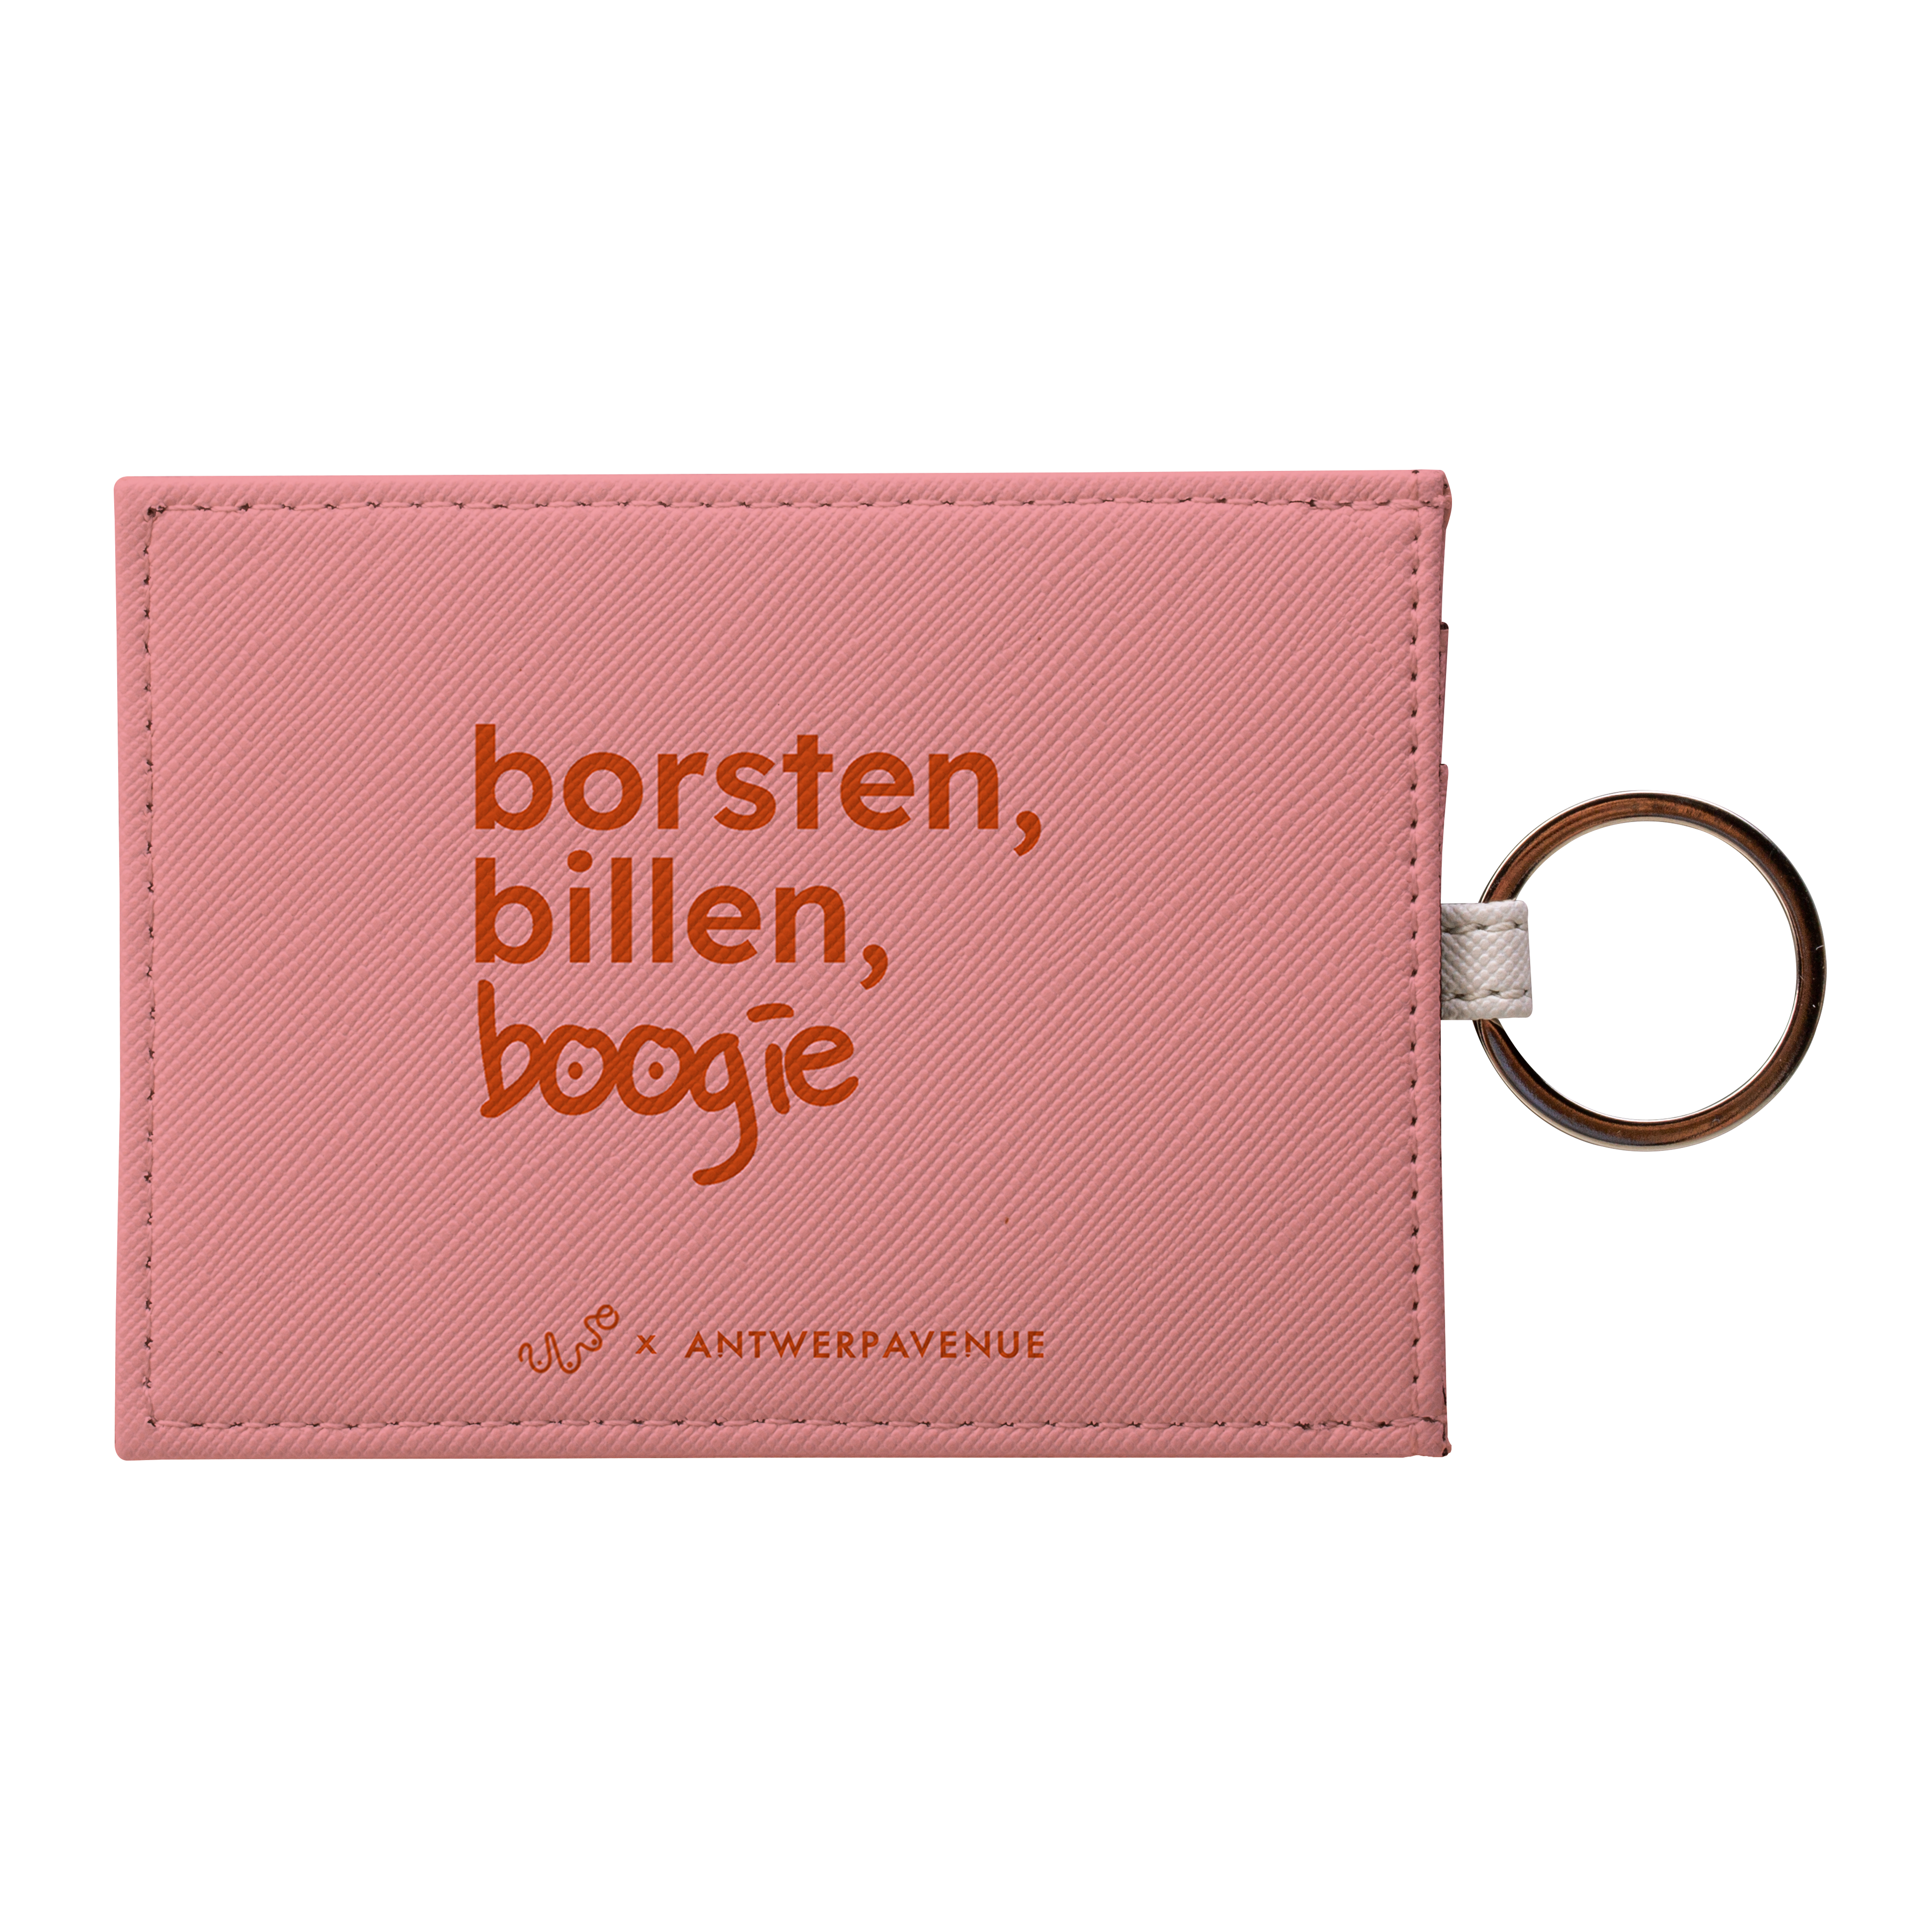 Borsten, Billen, Boogie (Pink) - Card Holder